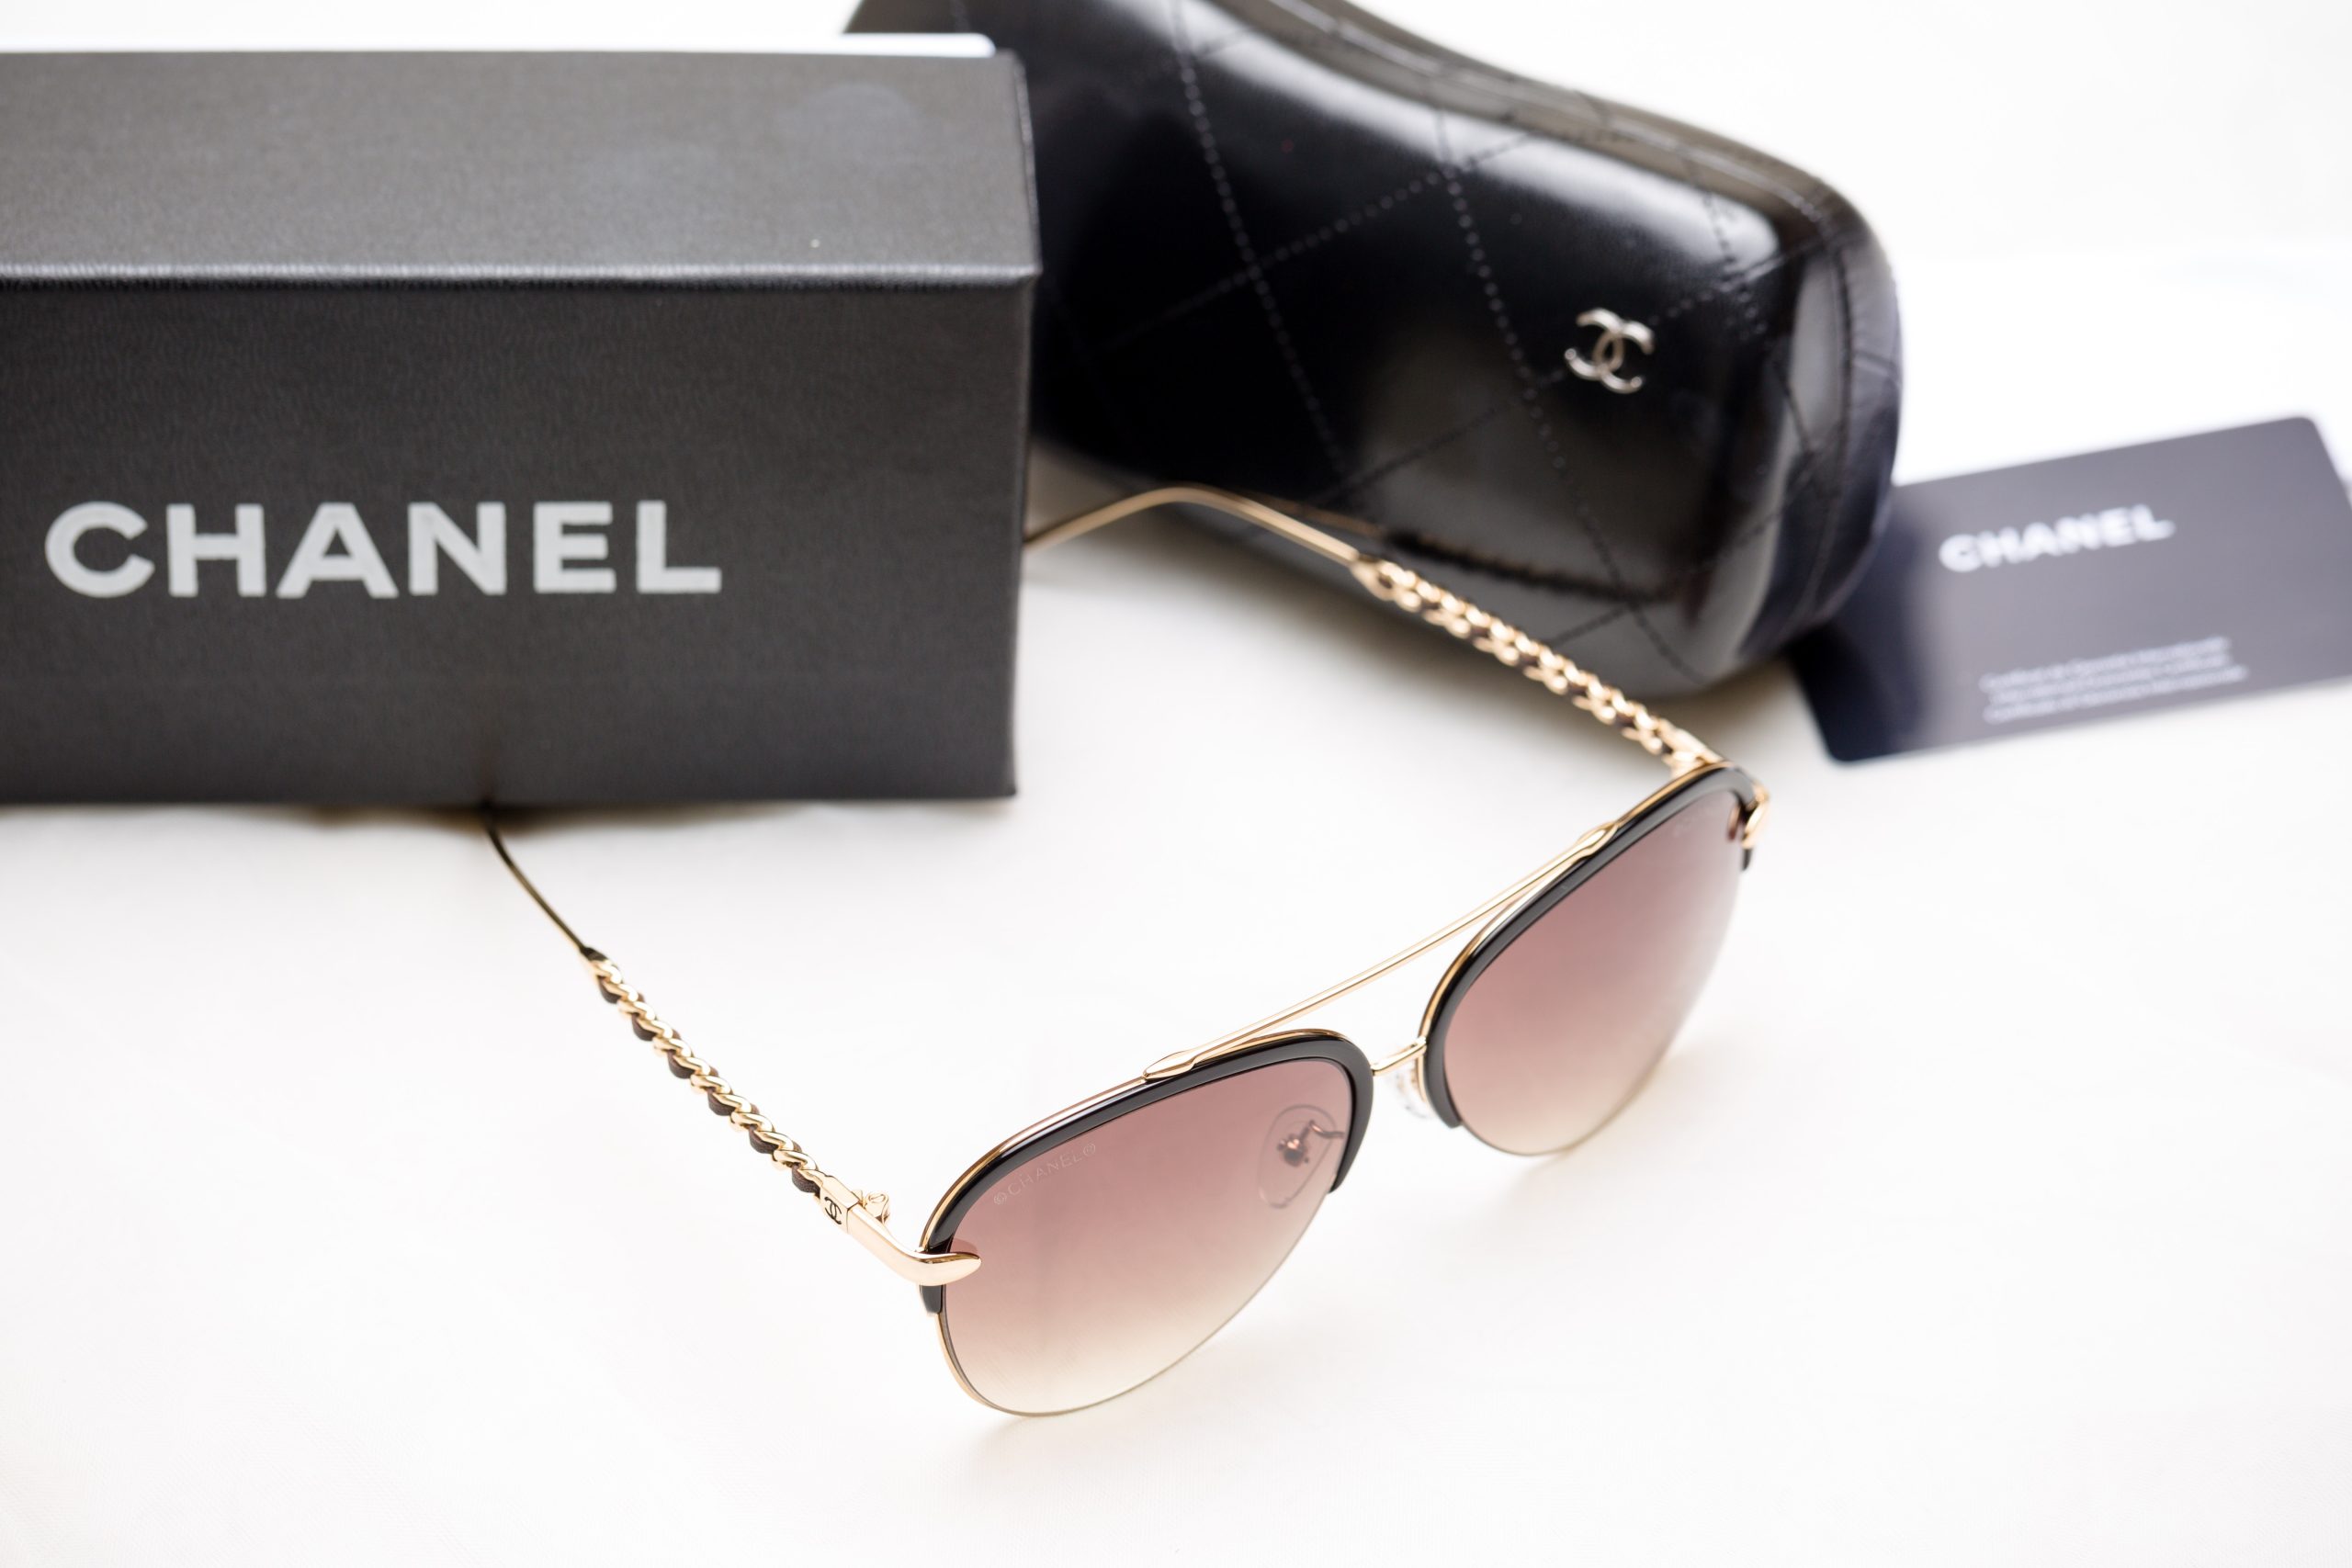 Suficiente activismo por hoy: Influencers rusas rompen bolsos Chanel por prohibir ventas en su país 